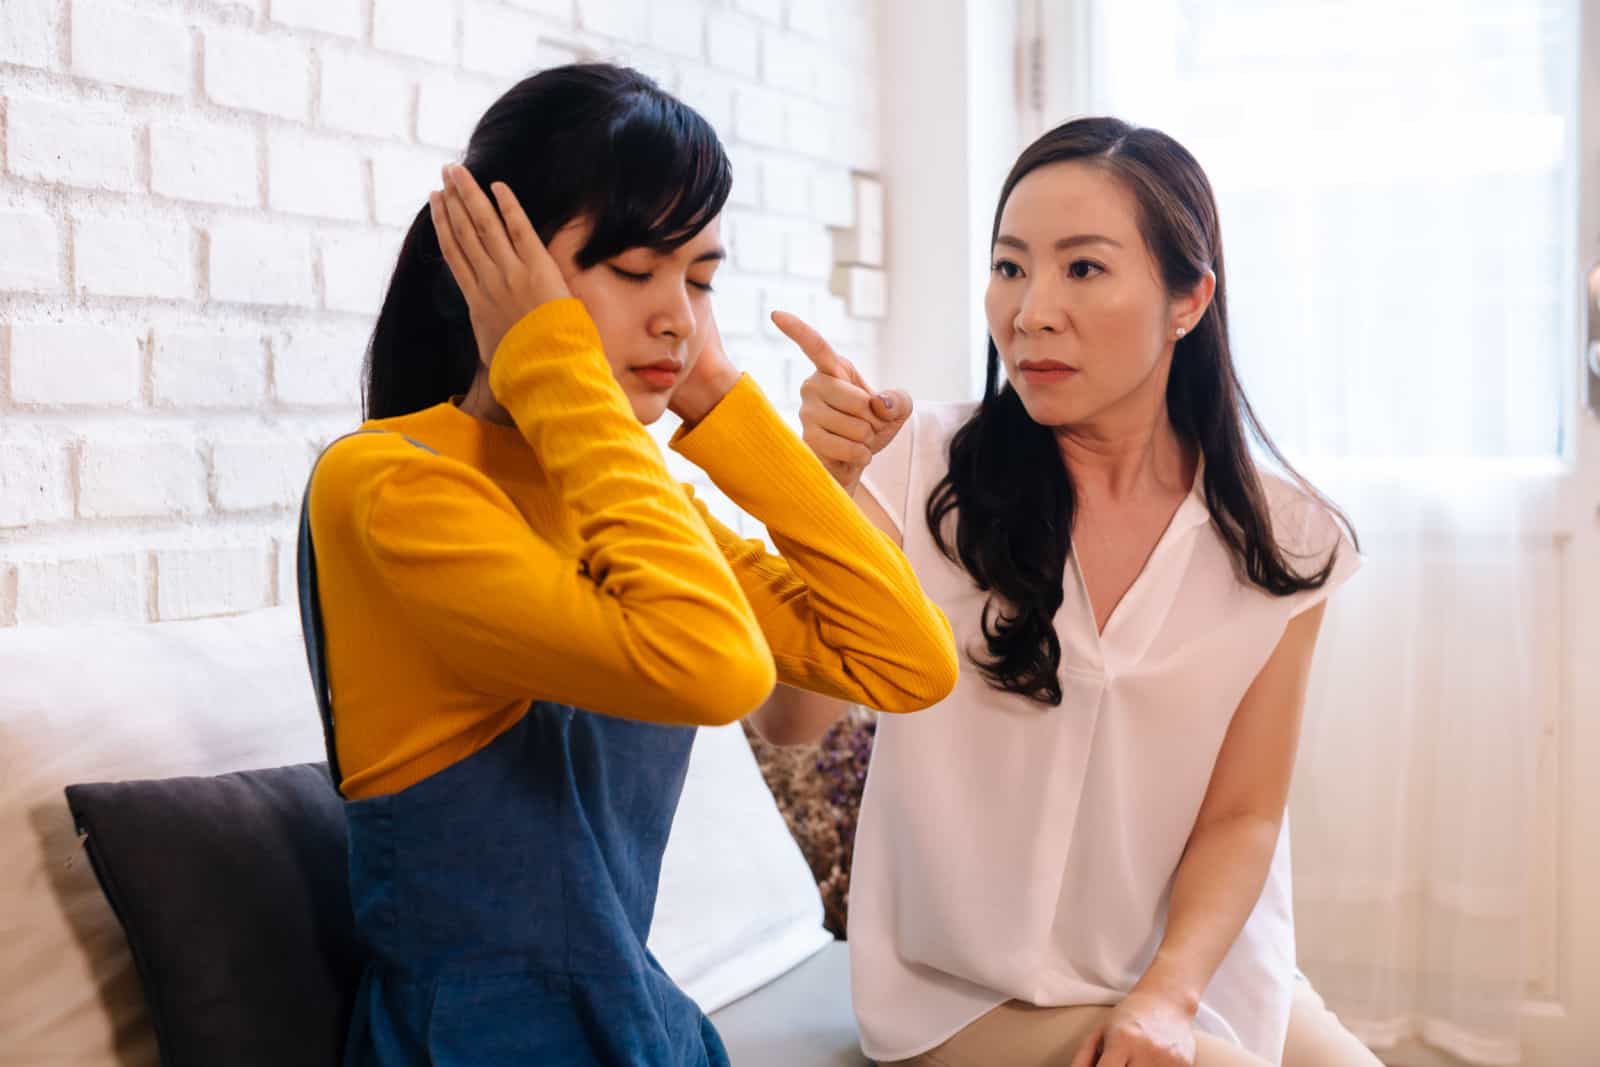 Discussione tra la figlia adolescente asiatica infastidita e la madre di mezz'età sconvolta.